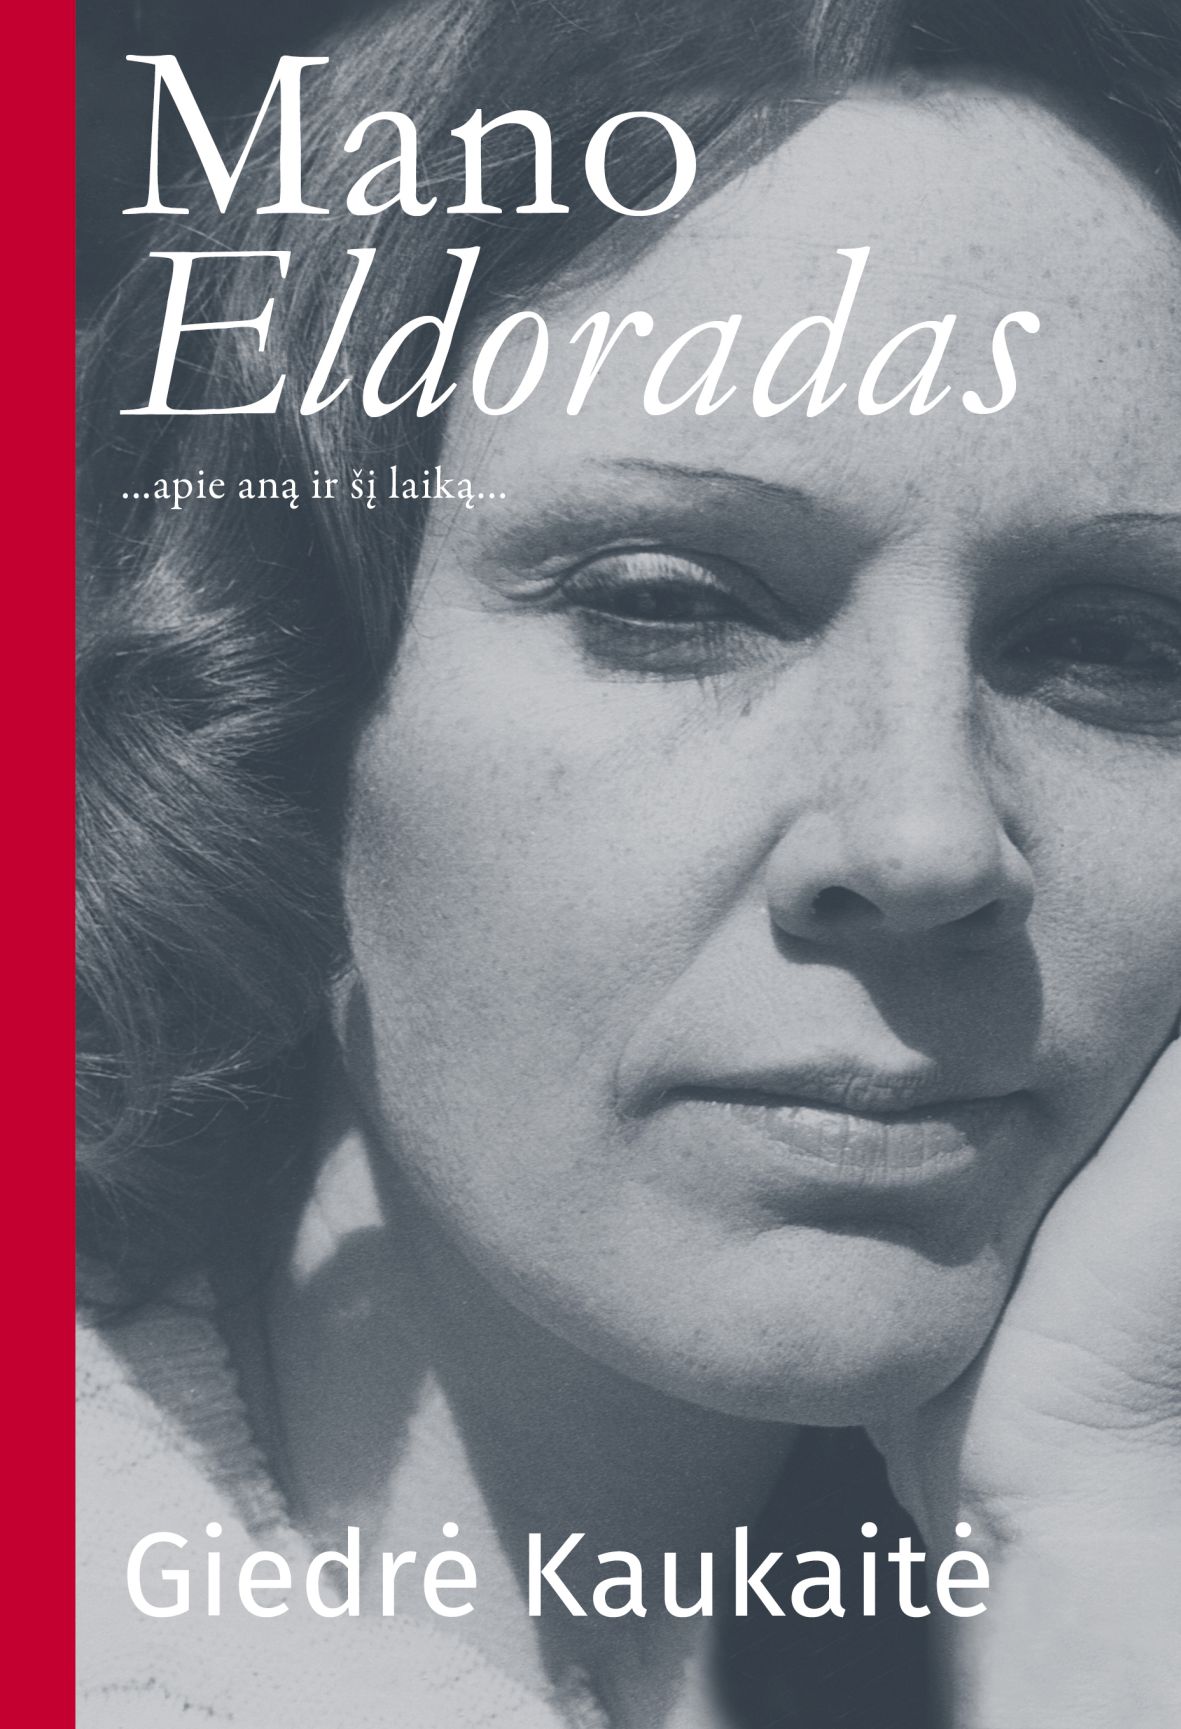 Knygos „Mano Eldoradas“ viršelis | Lietuvos rašytojų sąjungos leidyklos nuotr.